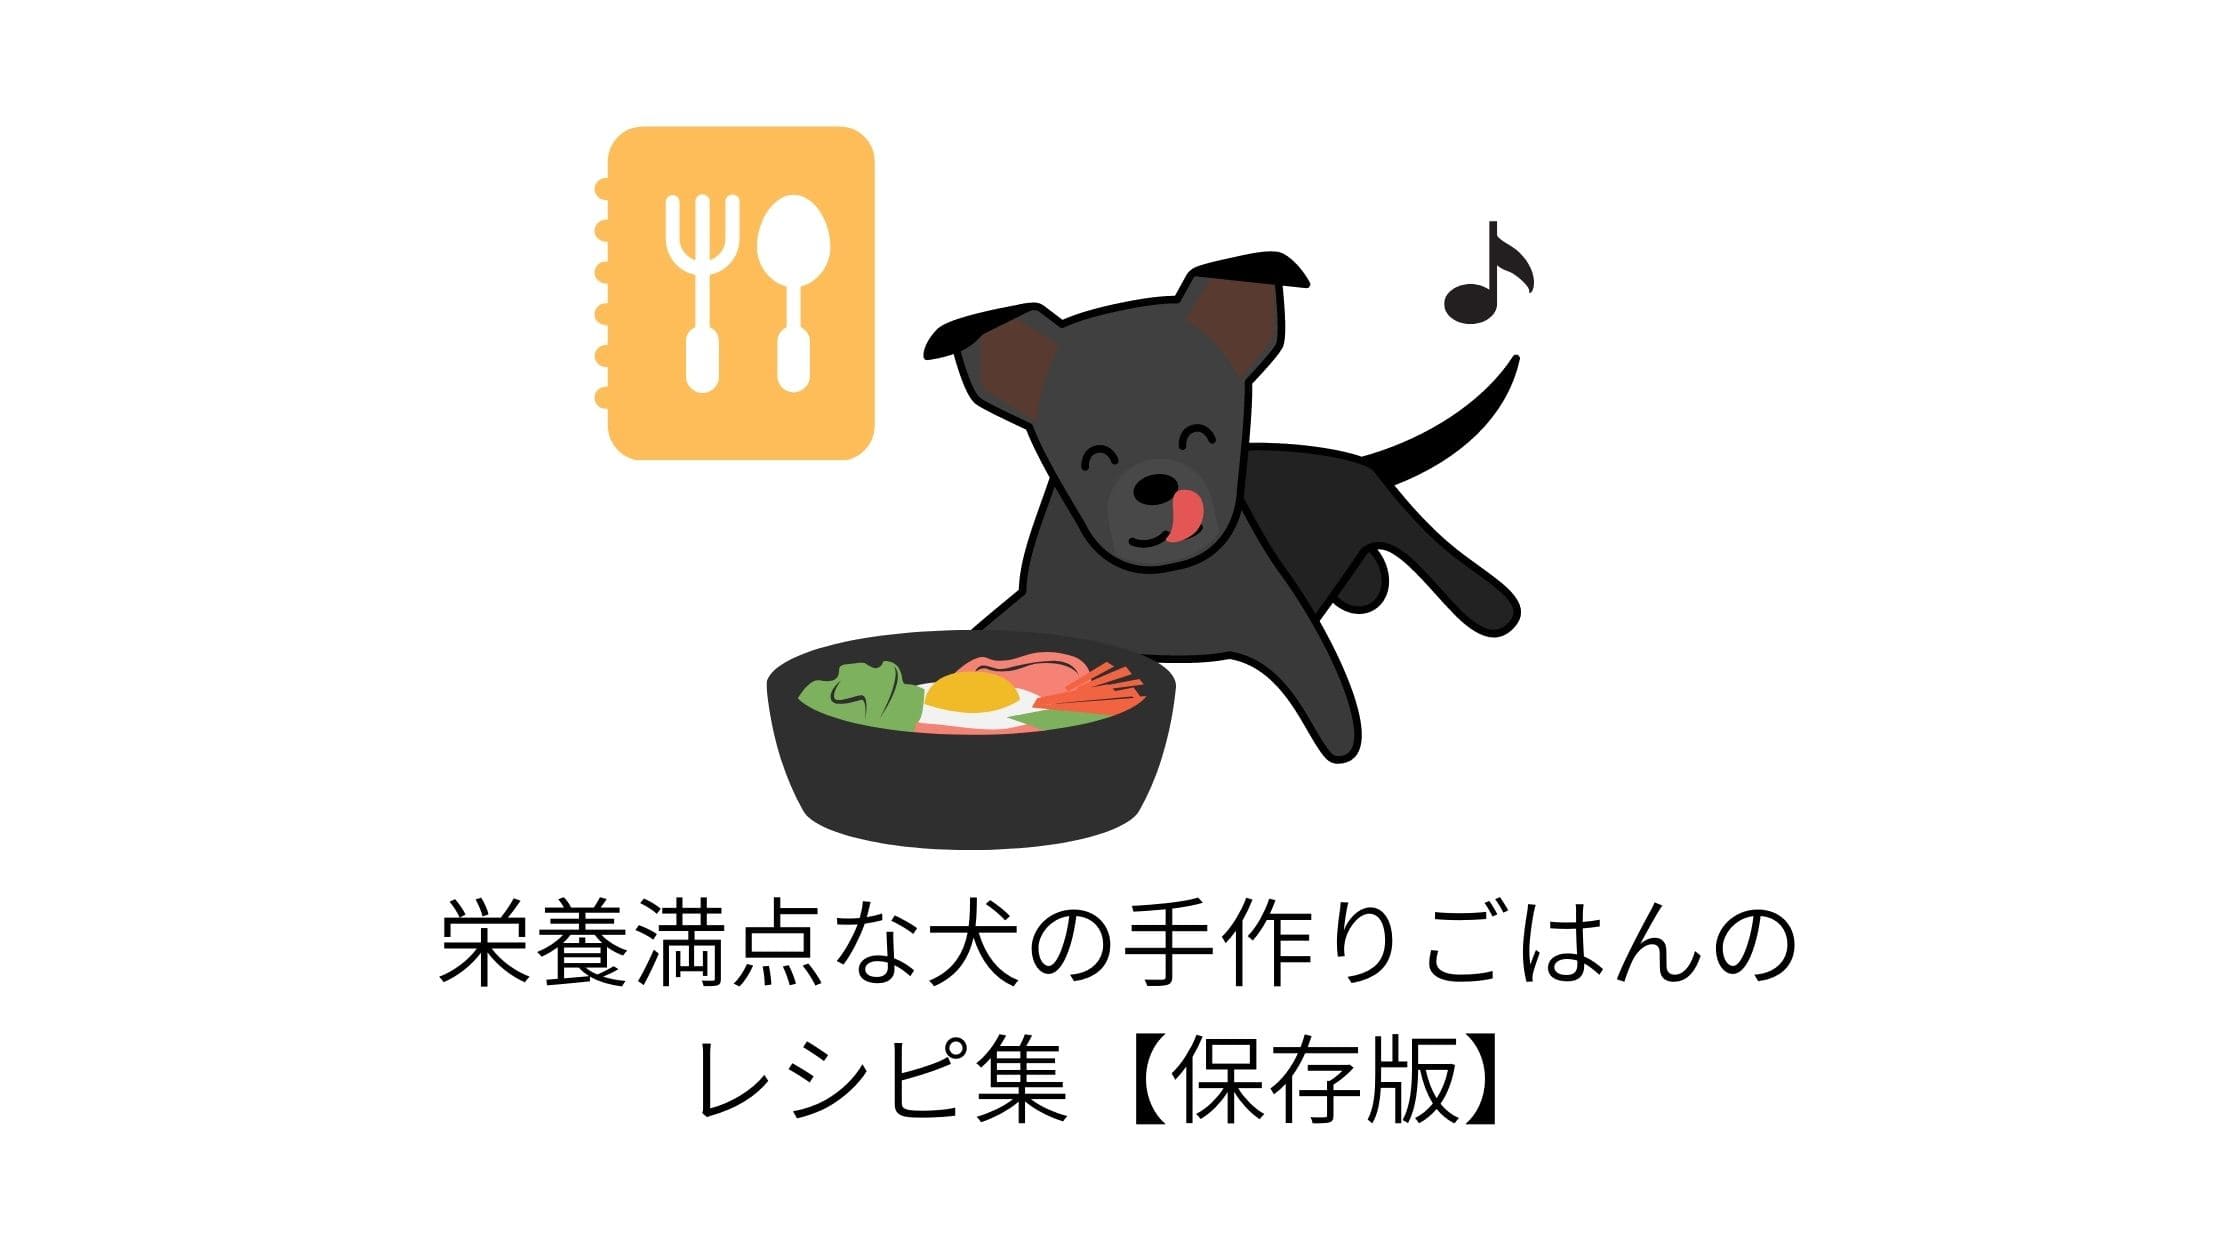 栄養満点な犬の手作りごはんのレシピ集【保存版】